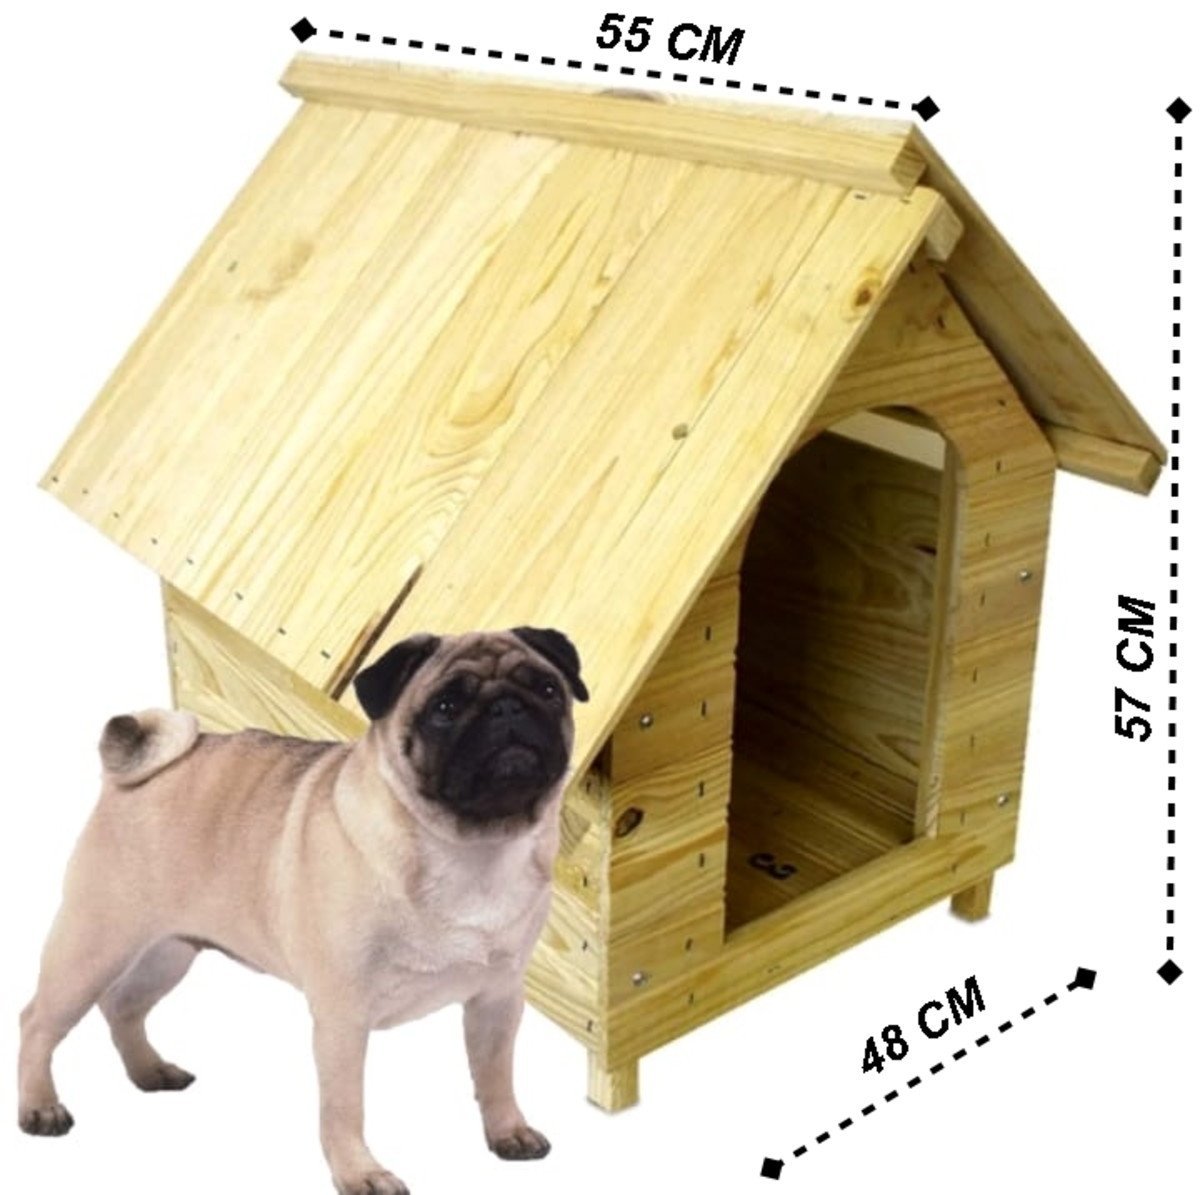 casa cachorro pet madeira 57x55 casinha cachorro porte médio - 2